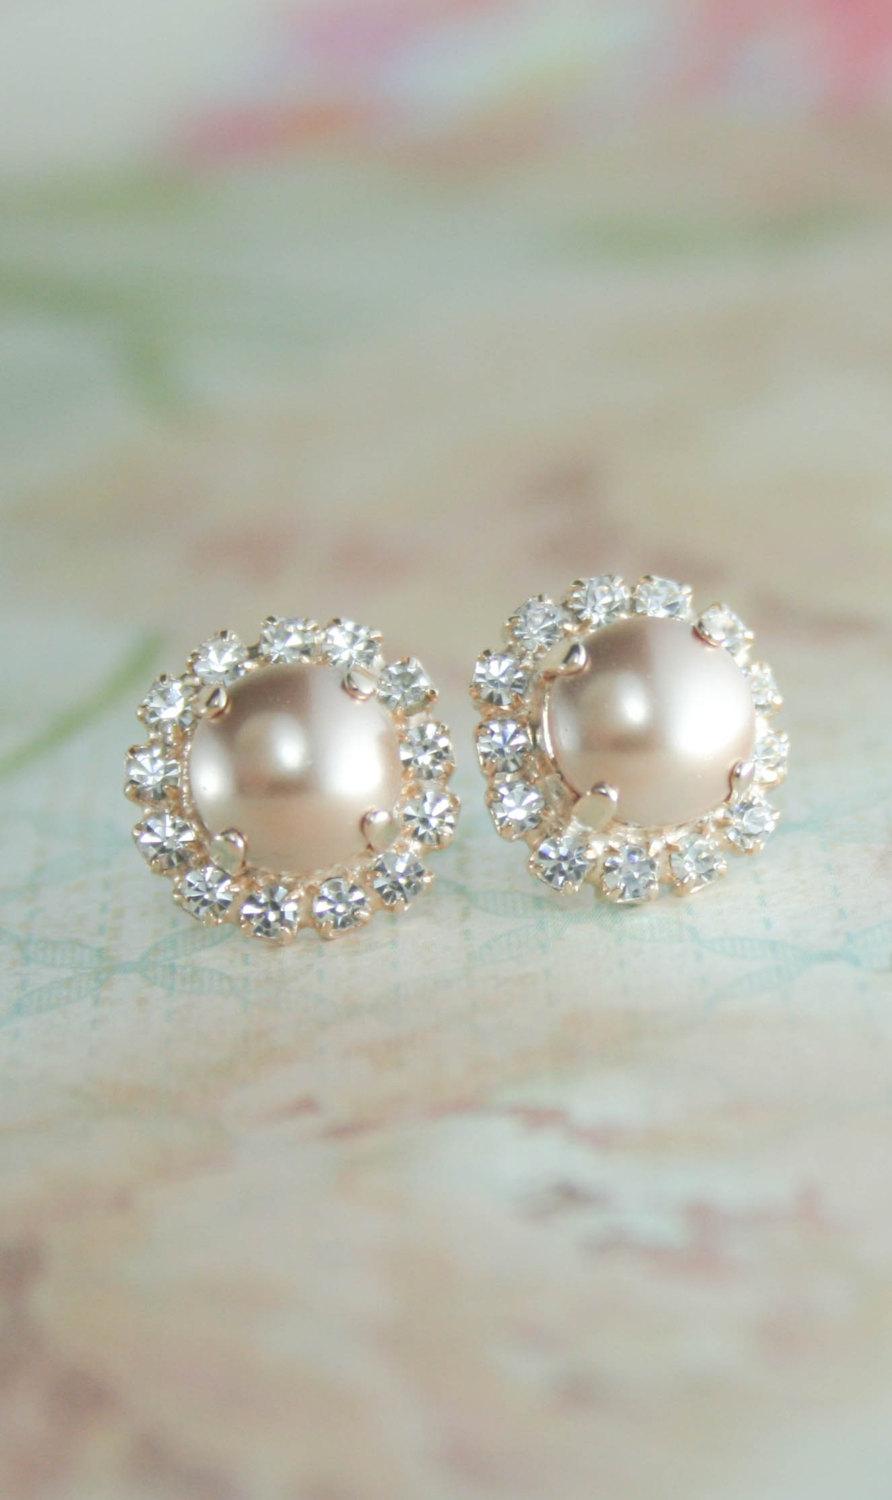 Свадьба - rose gold pearl earrings,rose gold wedding jewelry,rose gold earrings.rose gold bridal earrings,rose gold stud pearl earrings,pearl earrings